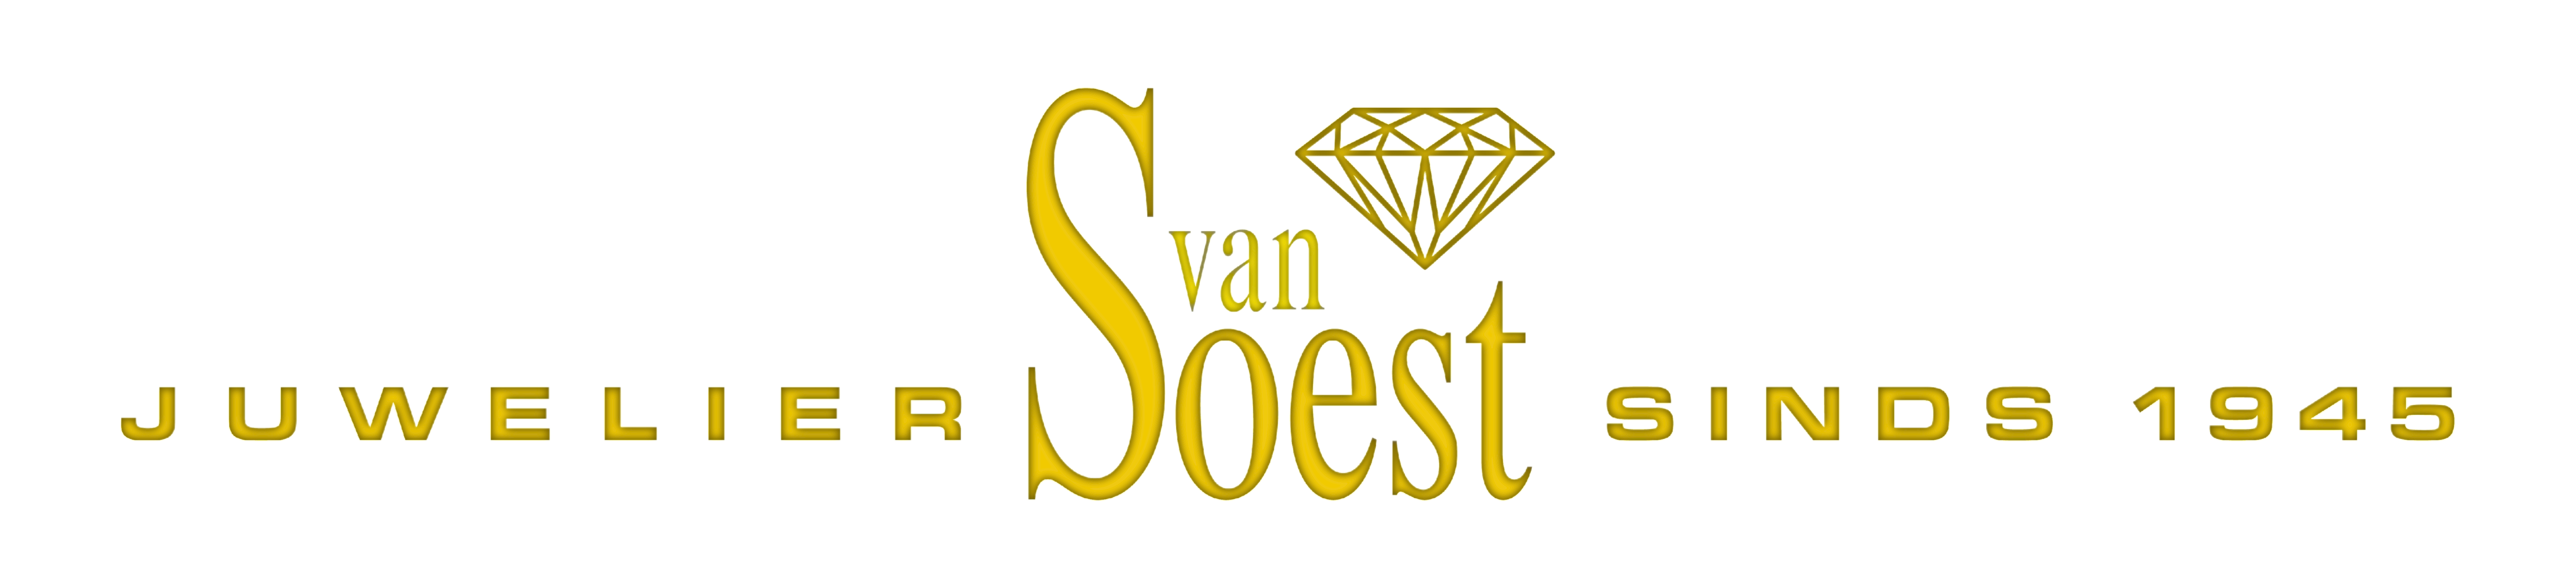 Juwelier van Soest